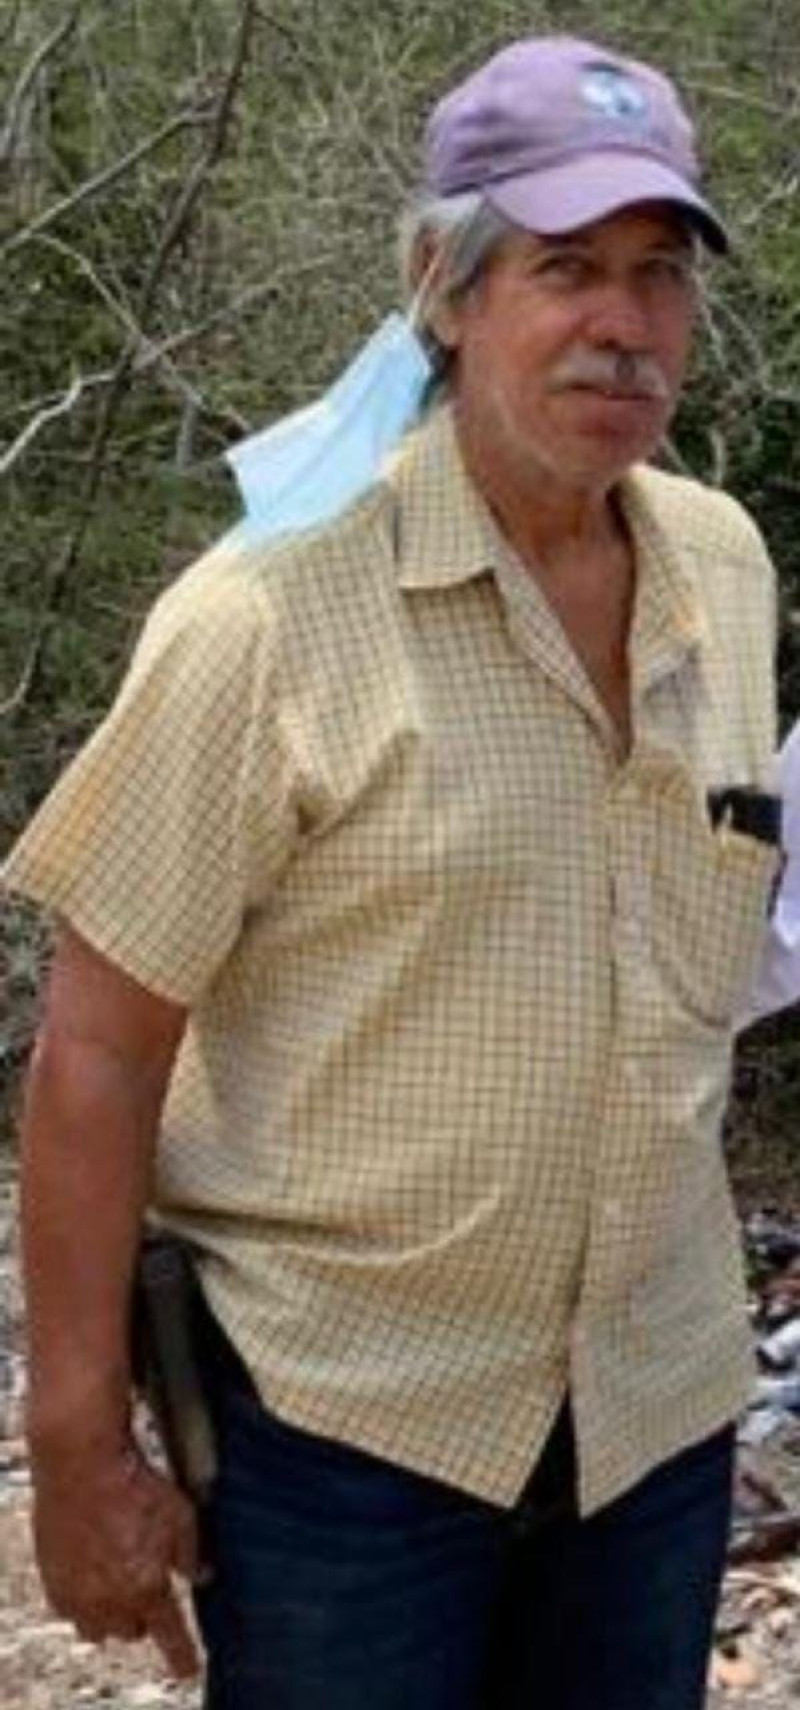 Generoso Perez, el hacendado y gallero reportado como desaparecido el 1 de mayo